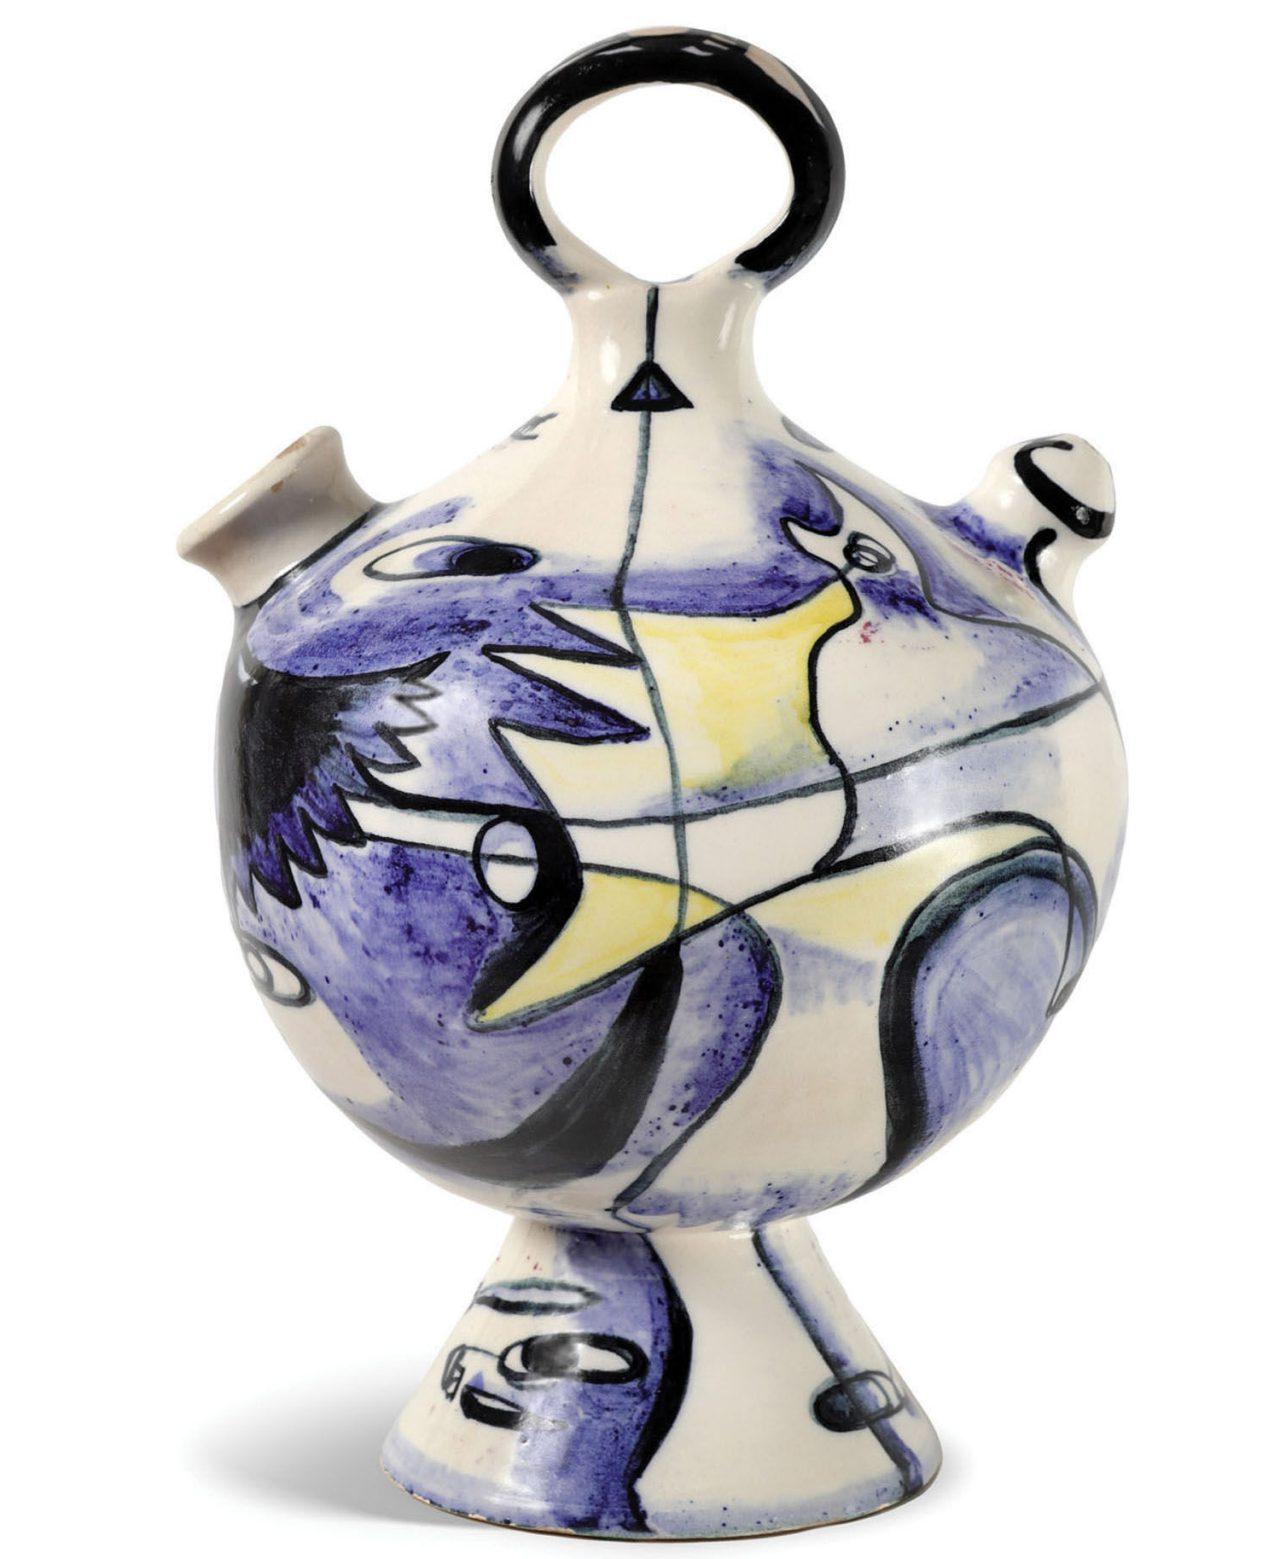 artist | artista Mariano RodrÃ­guez (1912â  90) 
ceramicist | ceramista Juan Miguel RodrÃ­guez de la Cruz (1902â  90)
Water Jug with Abstract Roosters | PorrÃ³n con gallos abstractos, 1952
painted ceramic | cerÃ¡mica pintada, Latin Art Core 
